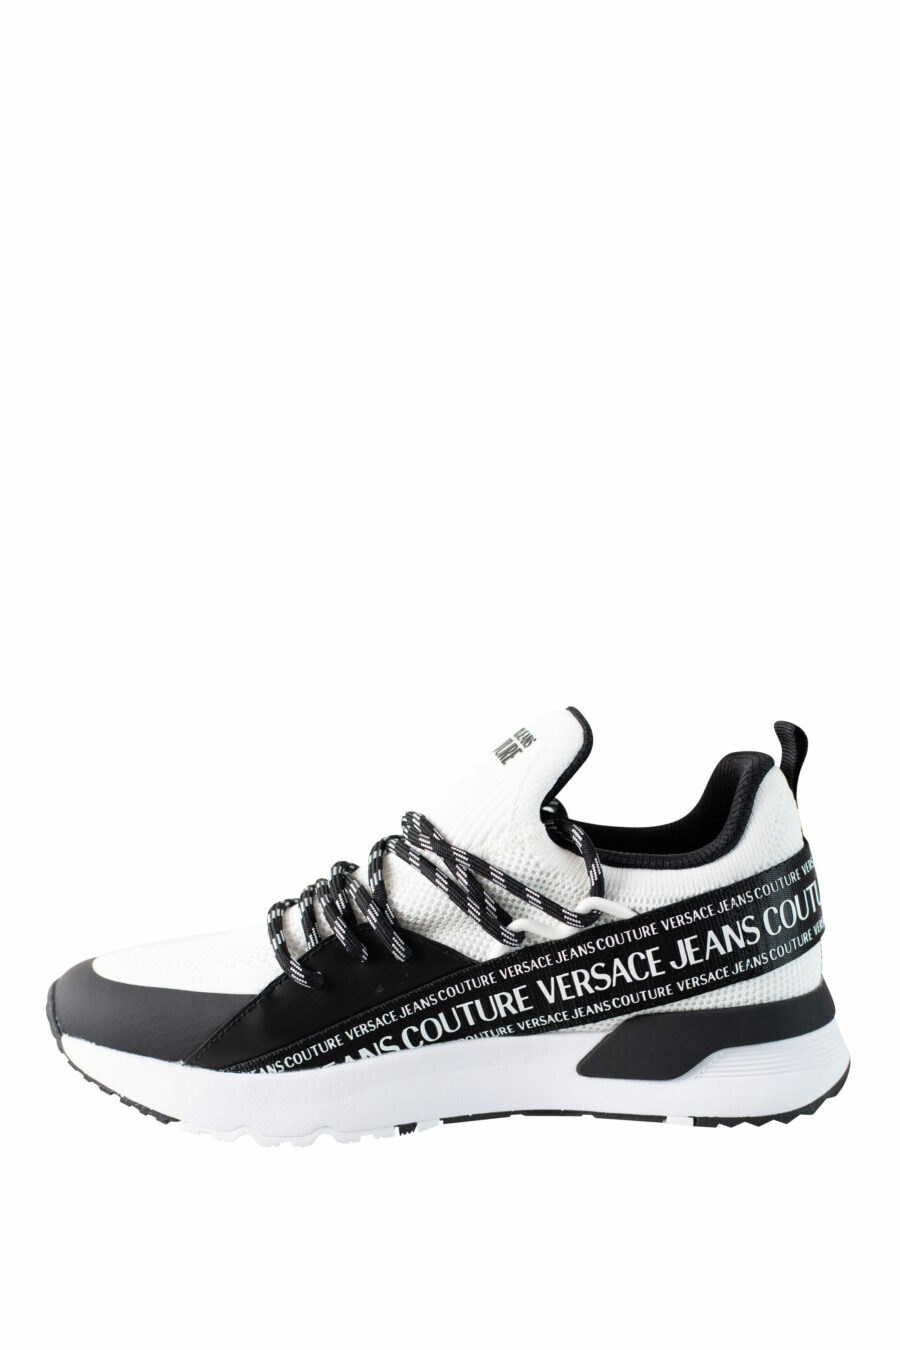 Zapatillas blancas y negras "dynamic" estilo calcetin con logo en cinta - IMG 4517